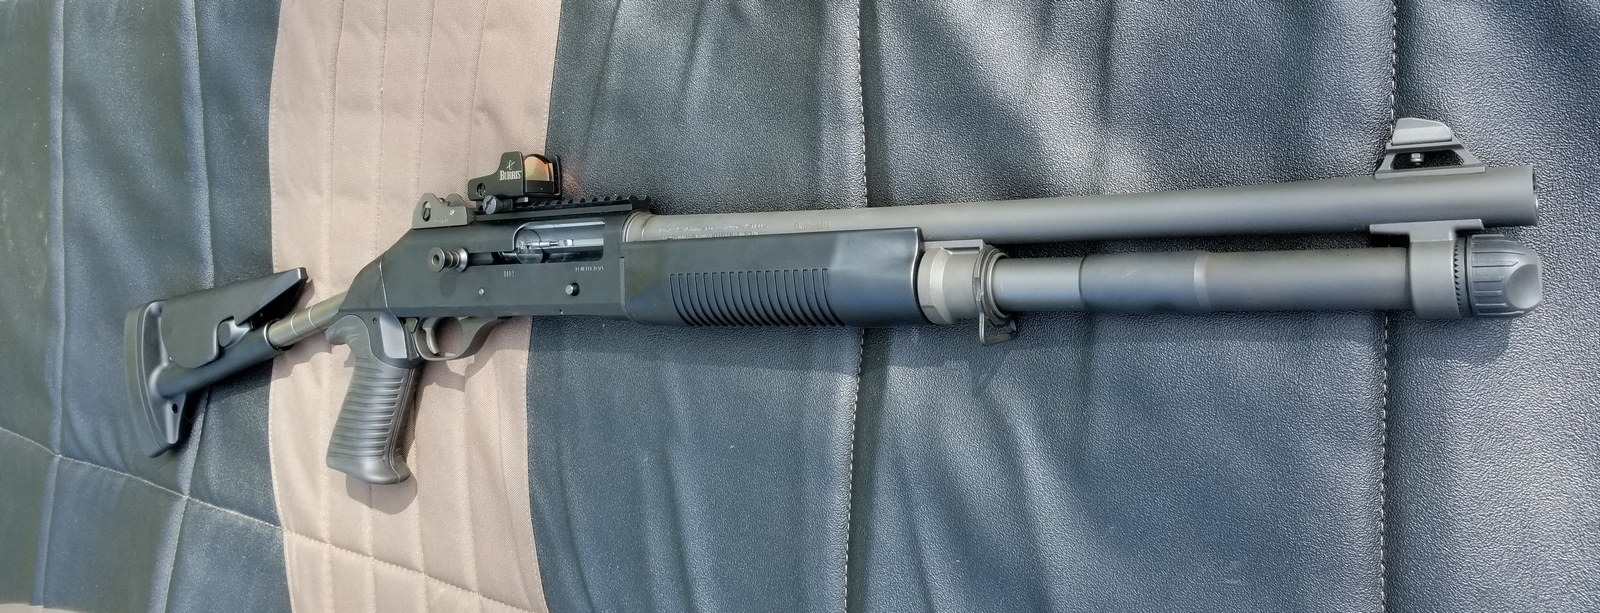 Komando p4 - Shotgun M4b10